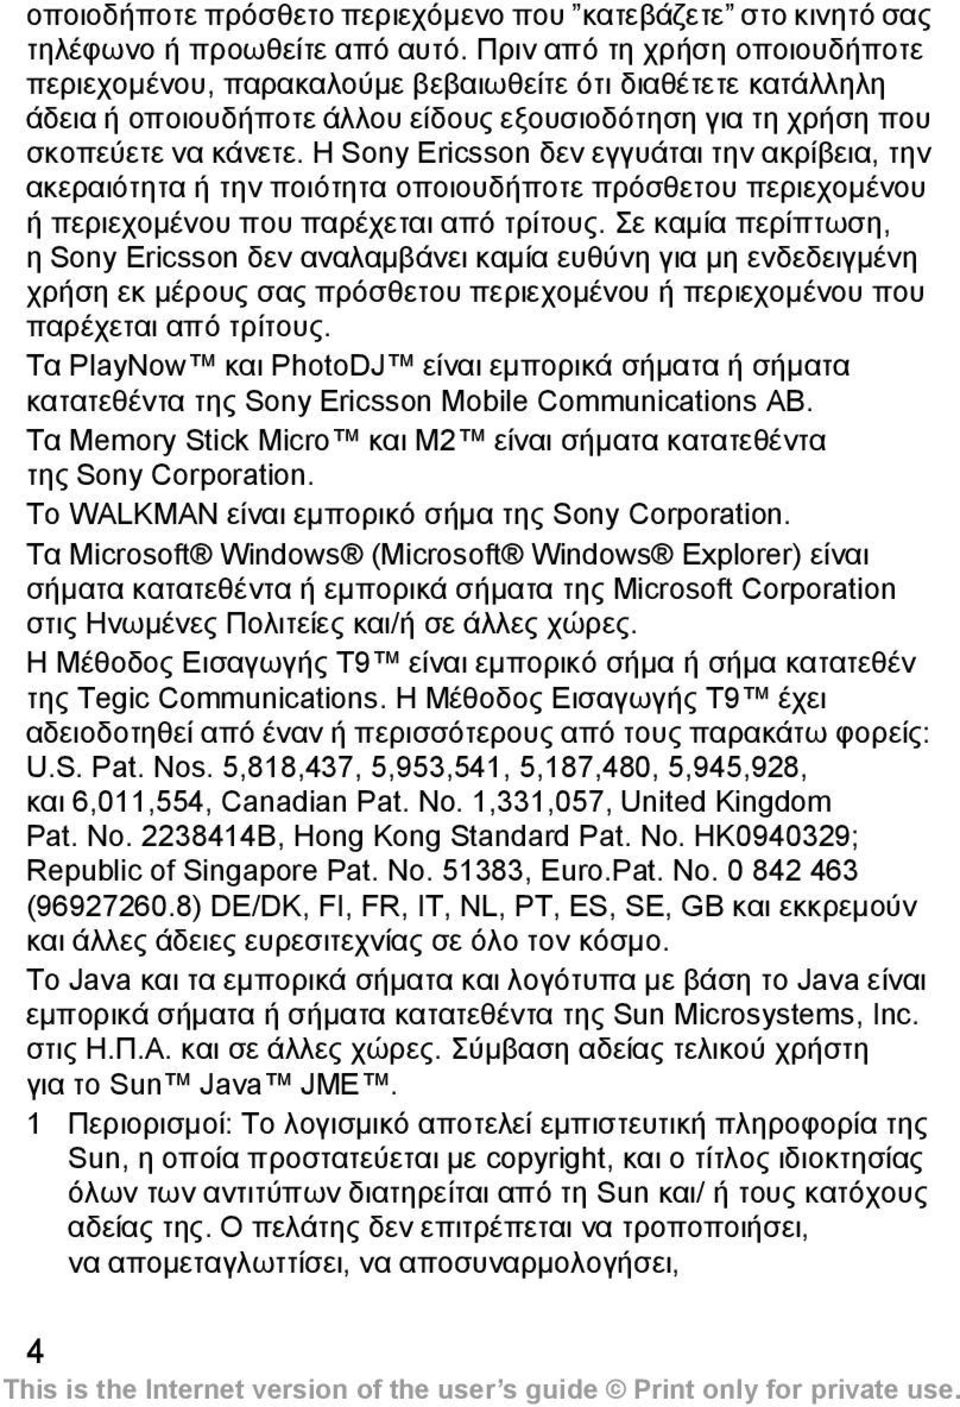 Η Sony Ericsson δεν εγγυάται την ακρίβεια, την ακεραιότητα ή την ποιότητα οποιουδήποτε πρόσθετου περιεχοµένου ή περιεχοµένου που παρέχεται από τρίτους.